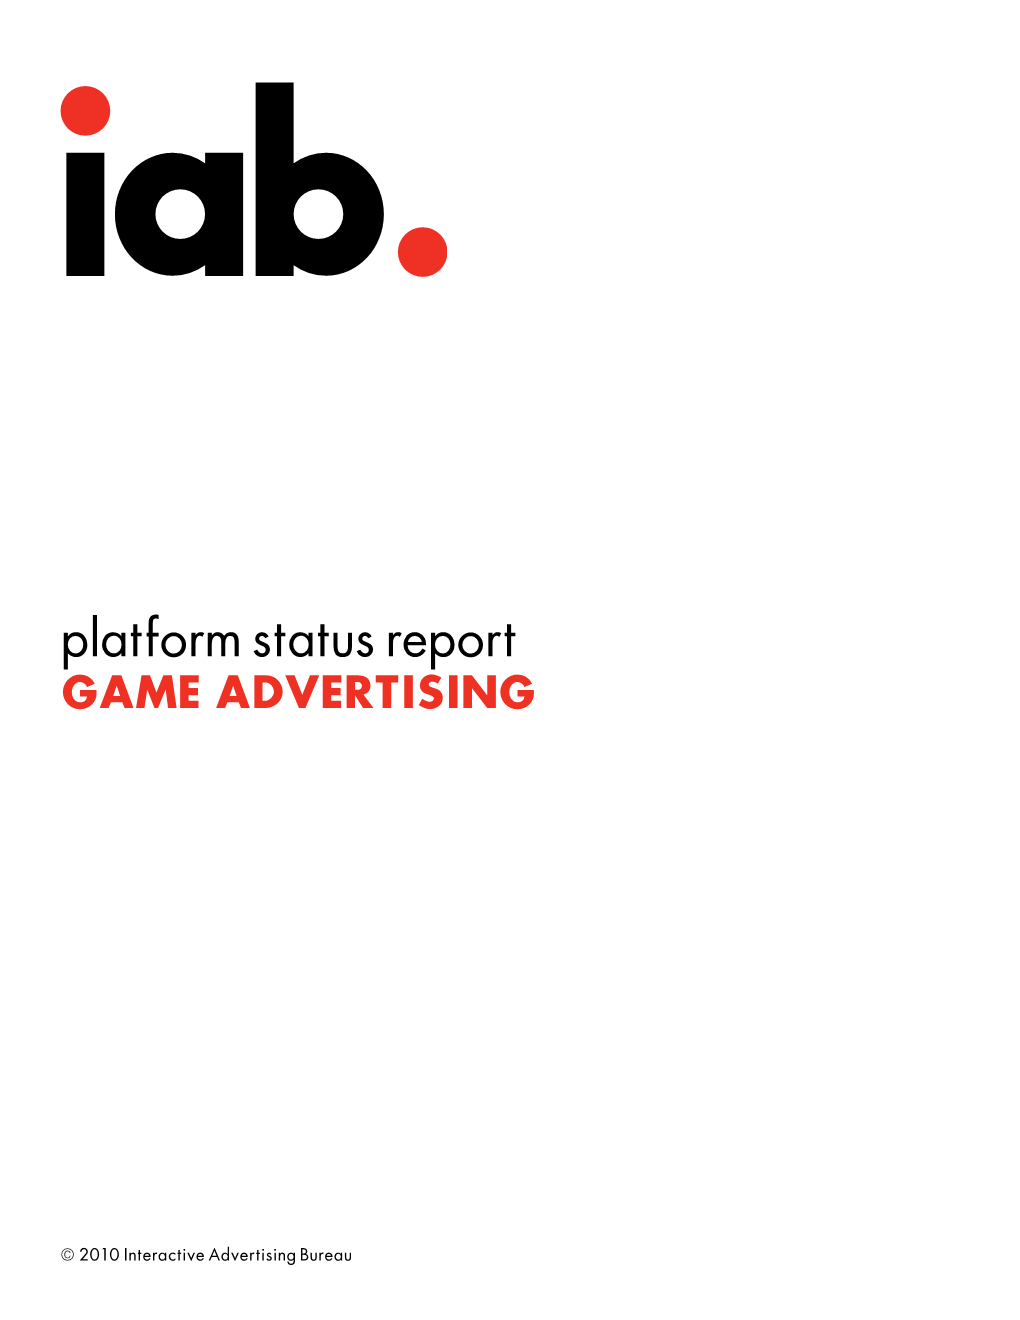 Platform Status Report GAME ADVERTISING